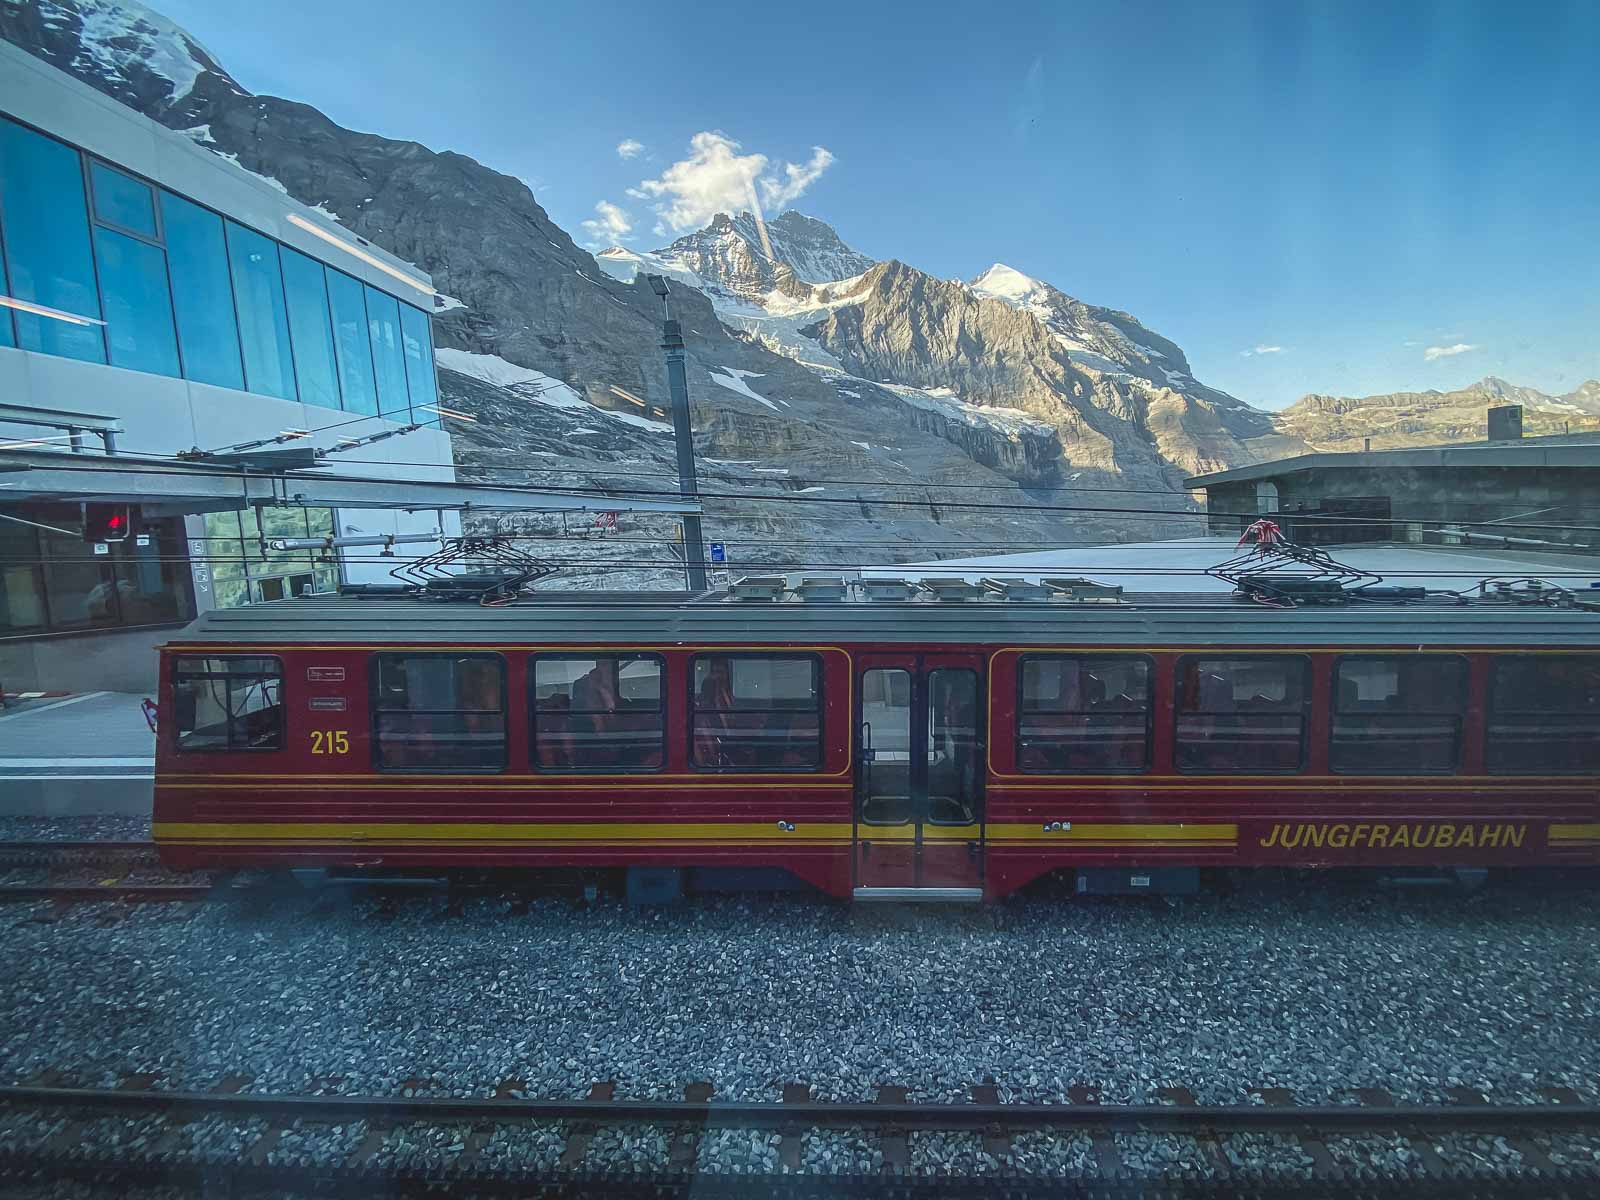 Jungfrau Railway Jungfraujoch top of Europe